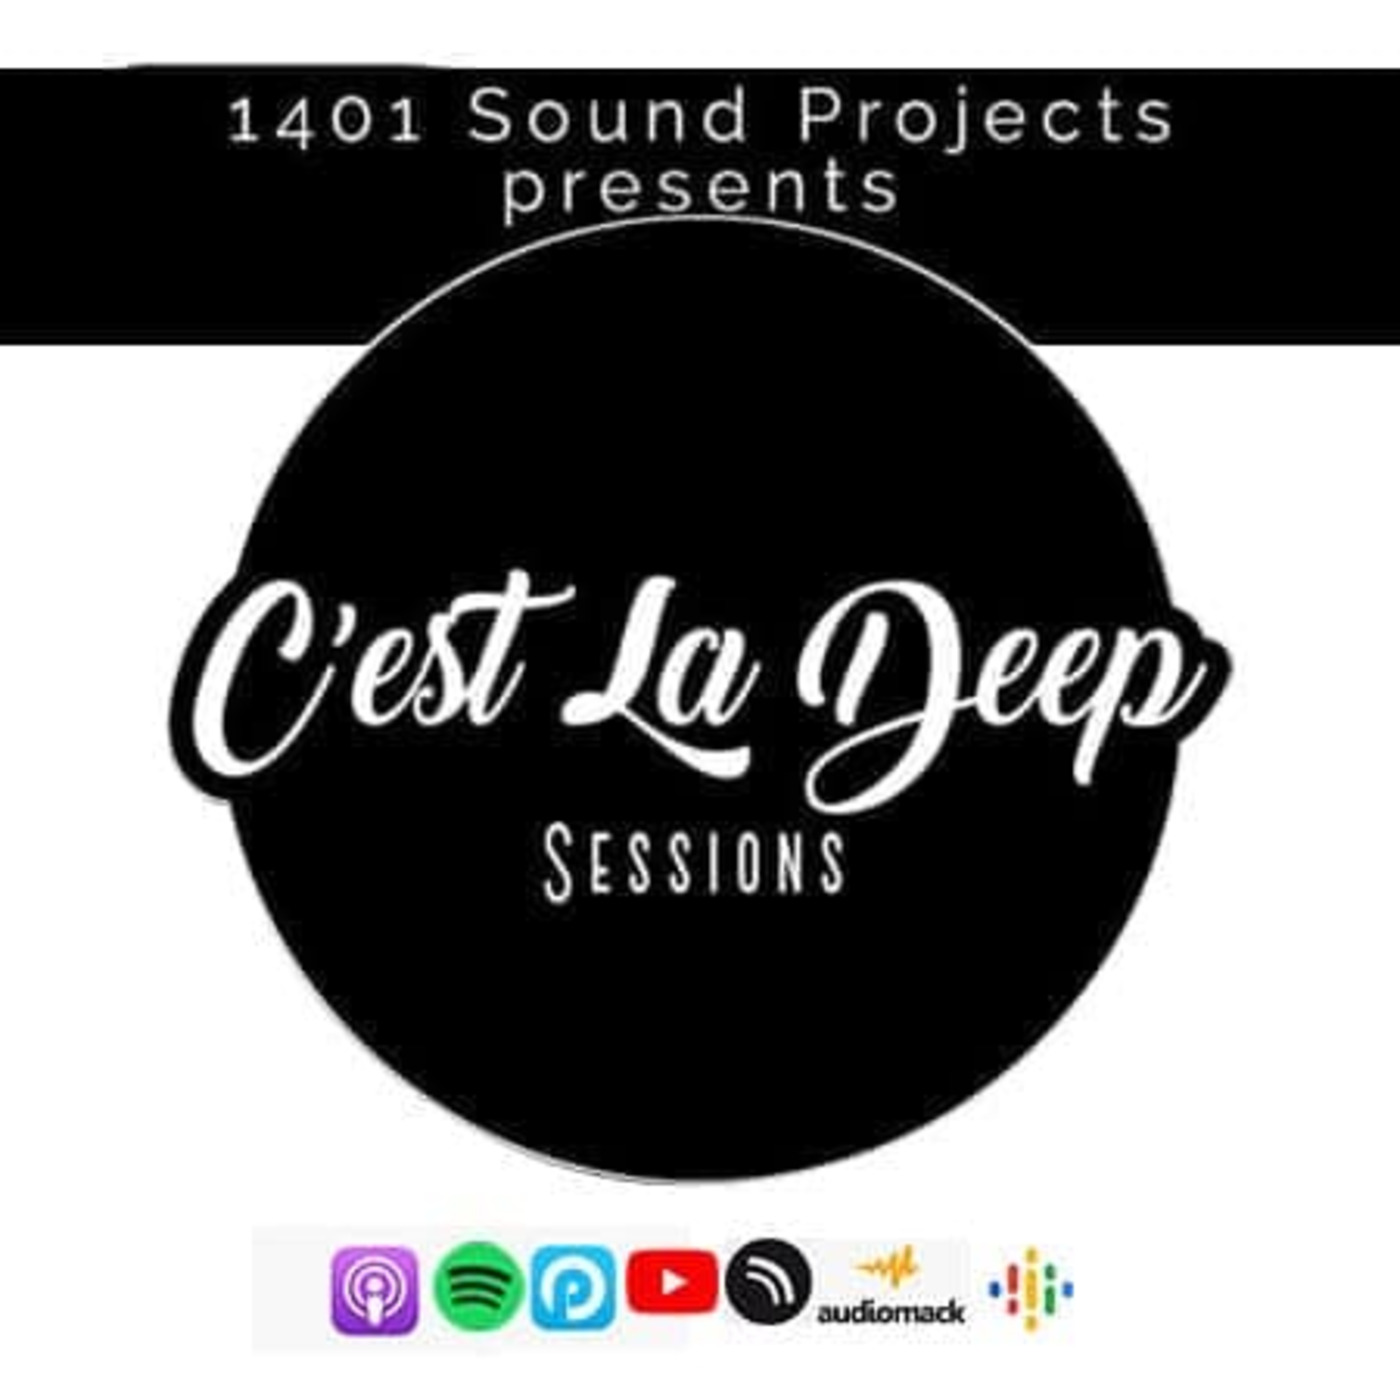 Episode 18: 1401 Sound Projects Presents C’est La Deep Sessions Vol.11 Mixed By Modi-Soul